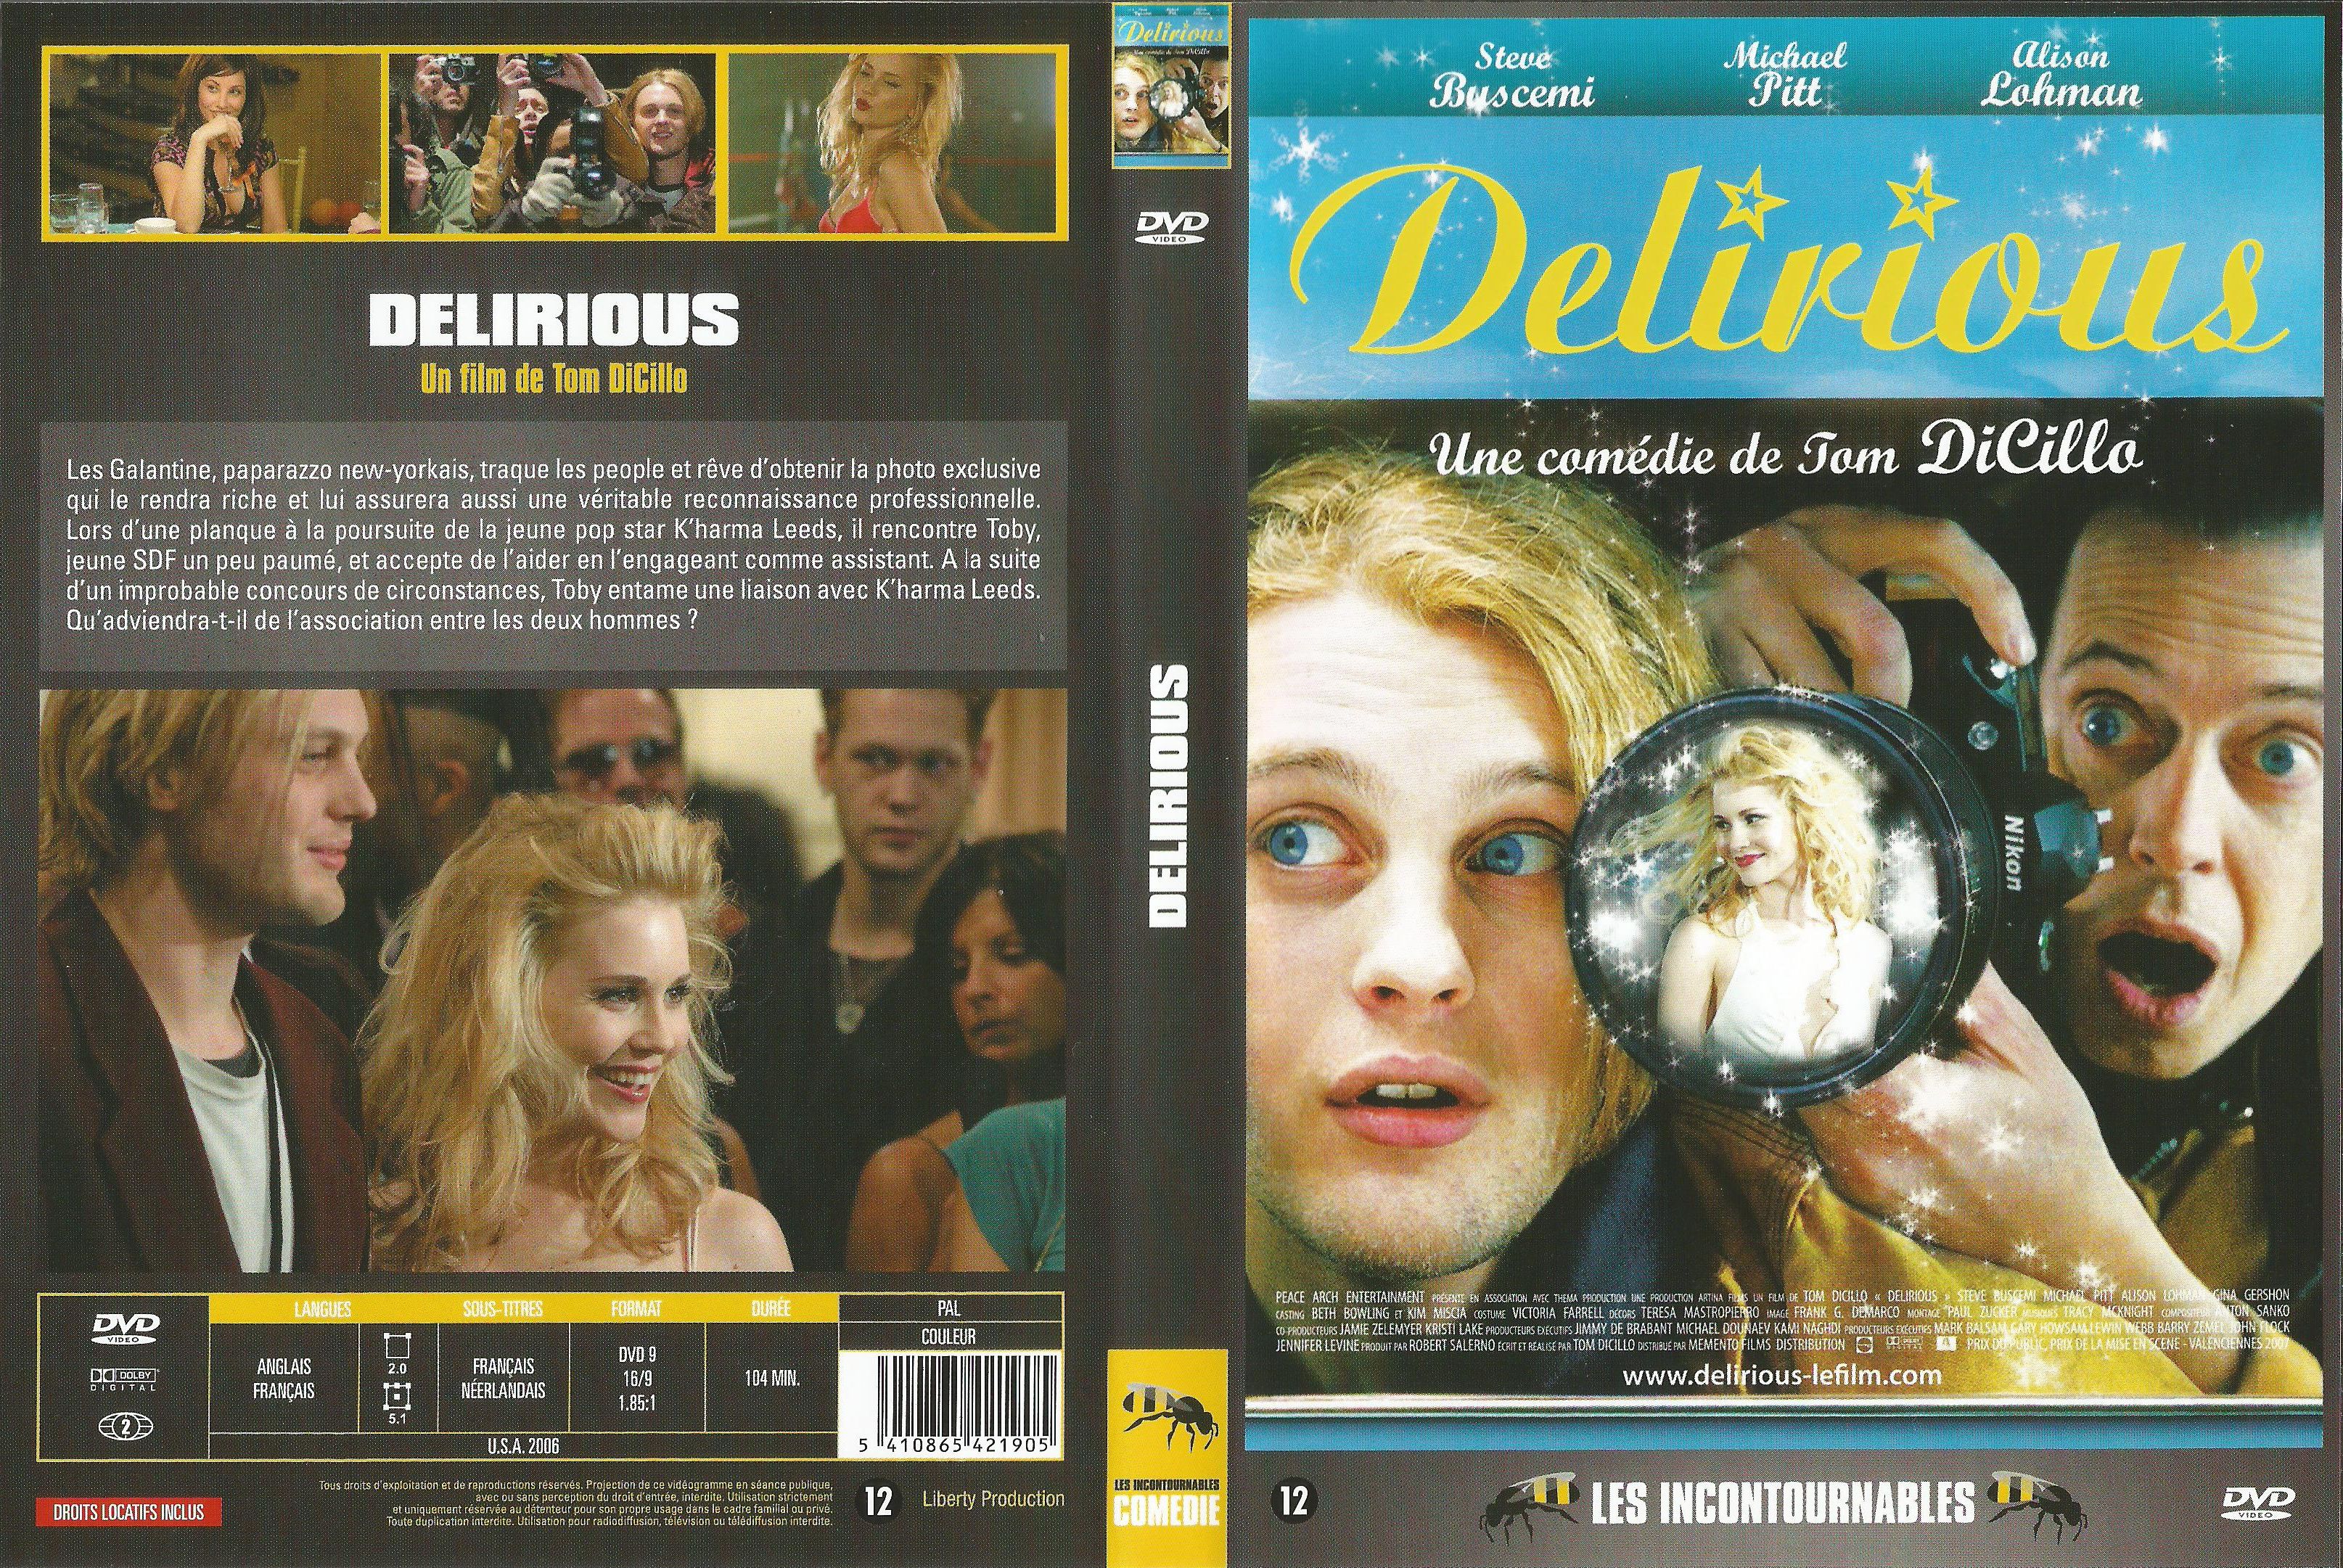 Jaquette DVD Delirious v3